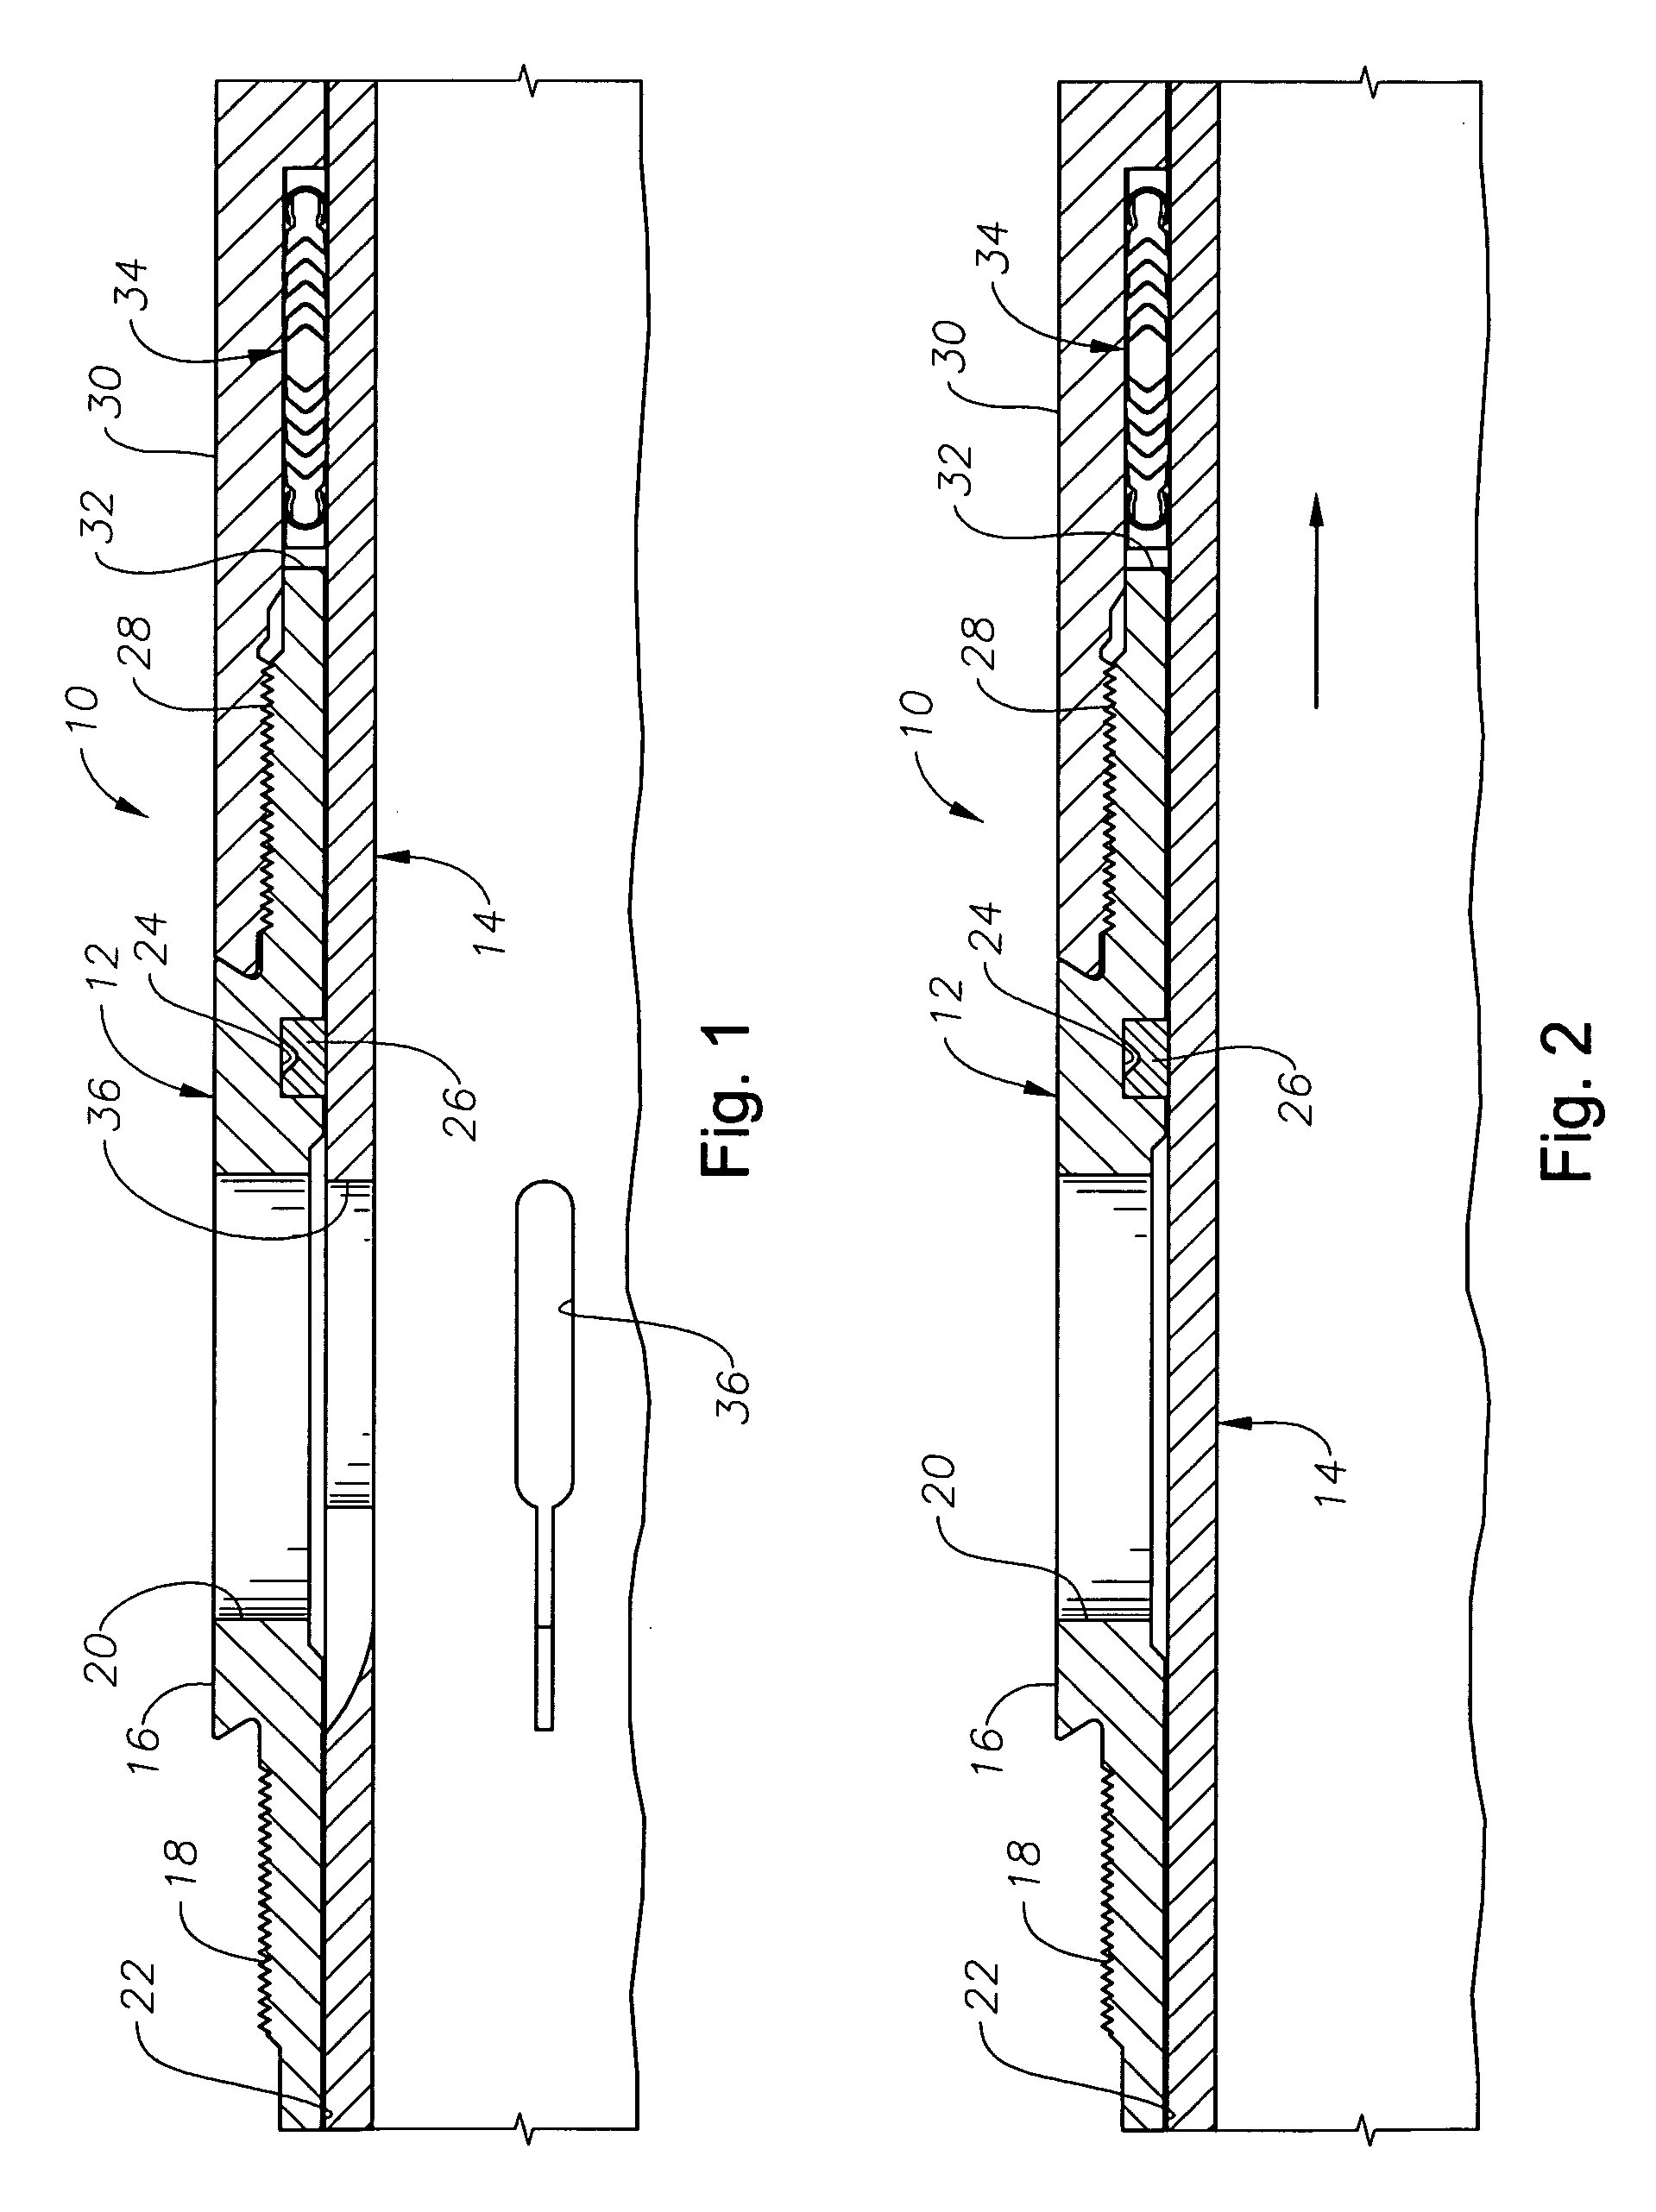 Metal-to-metal non-elastomeric seal stack